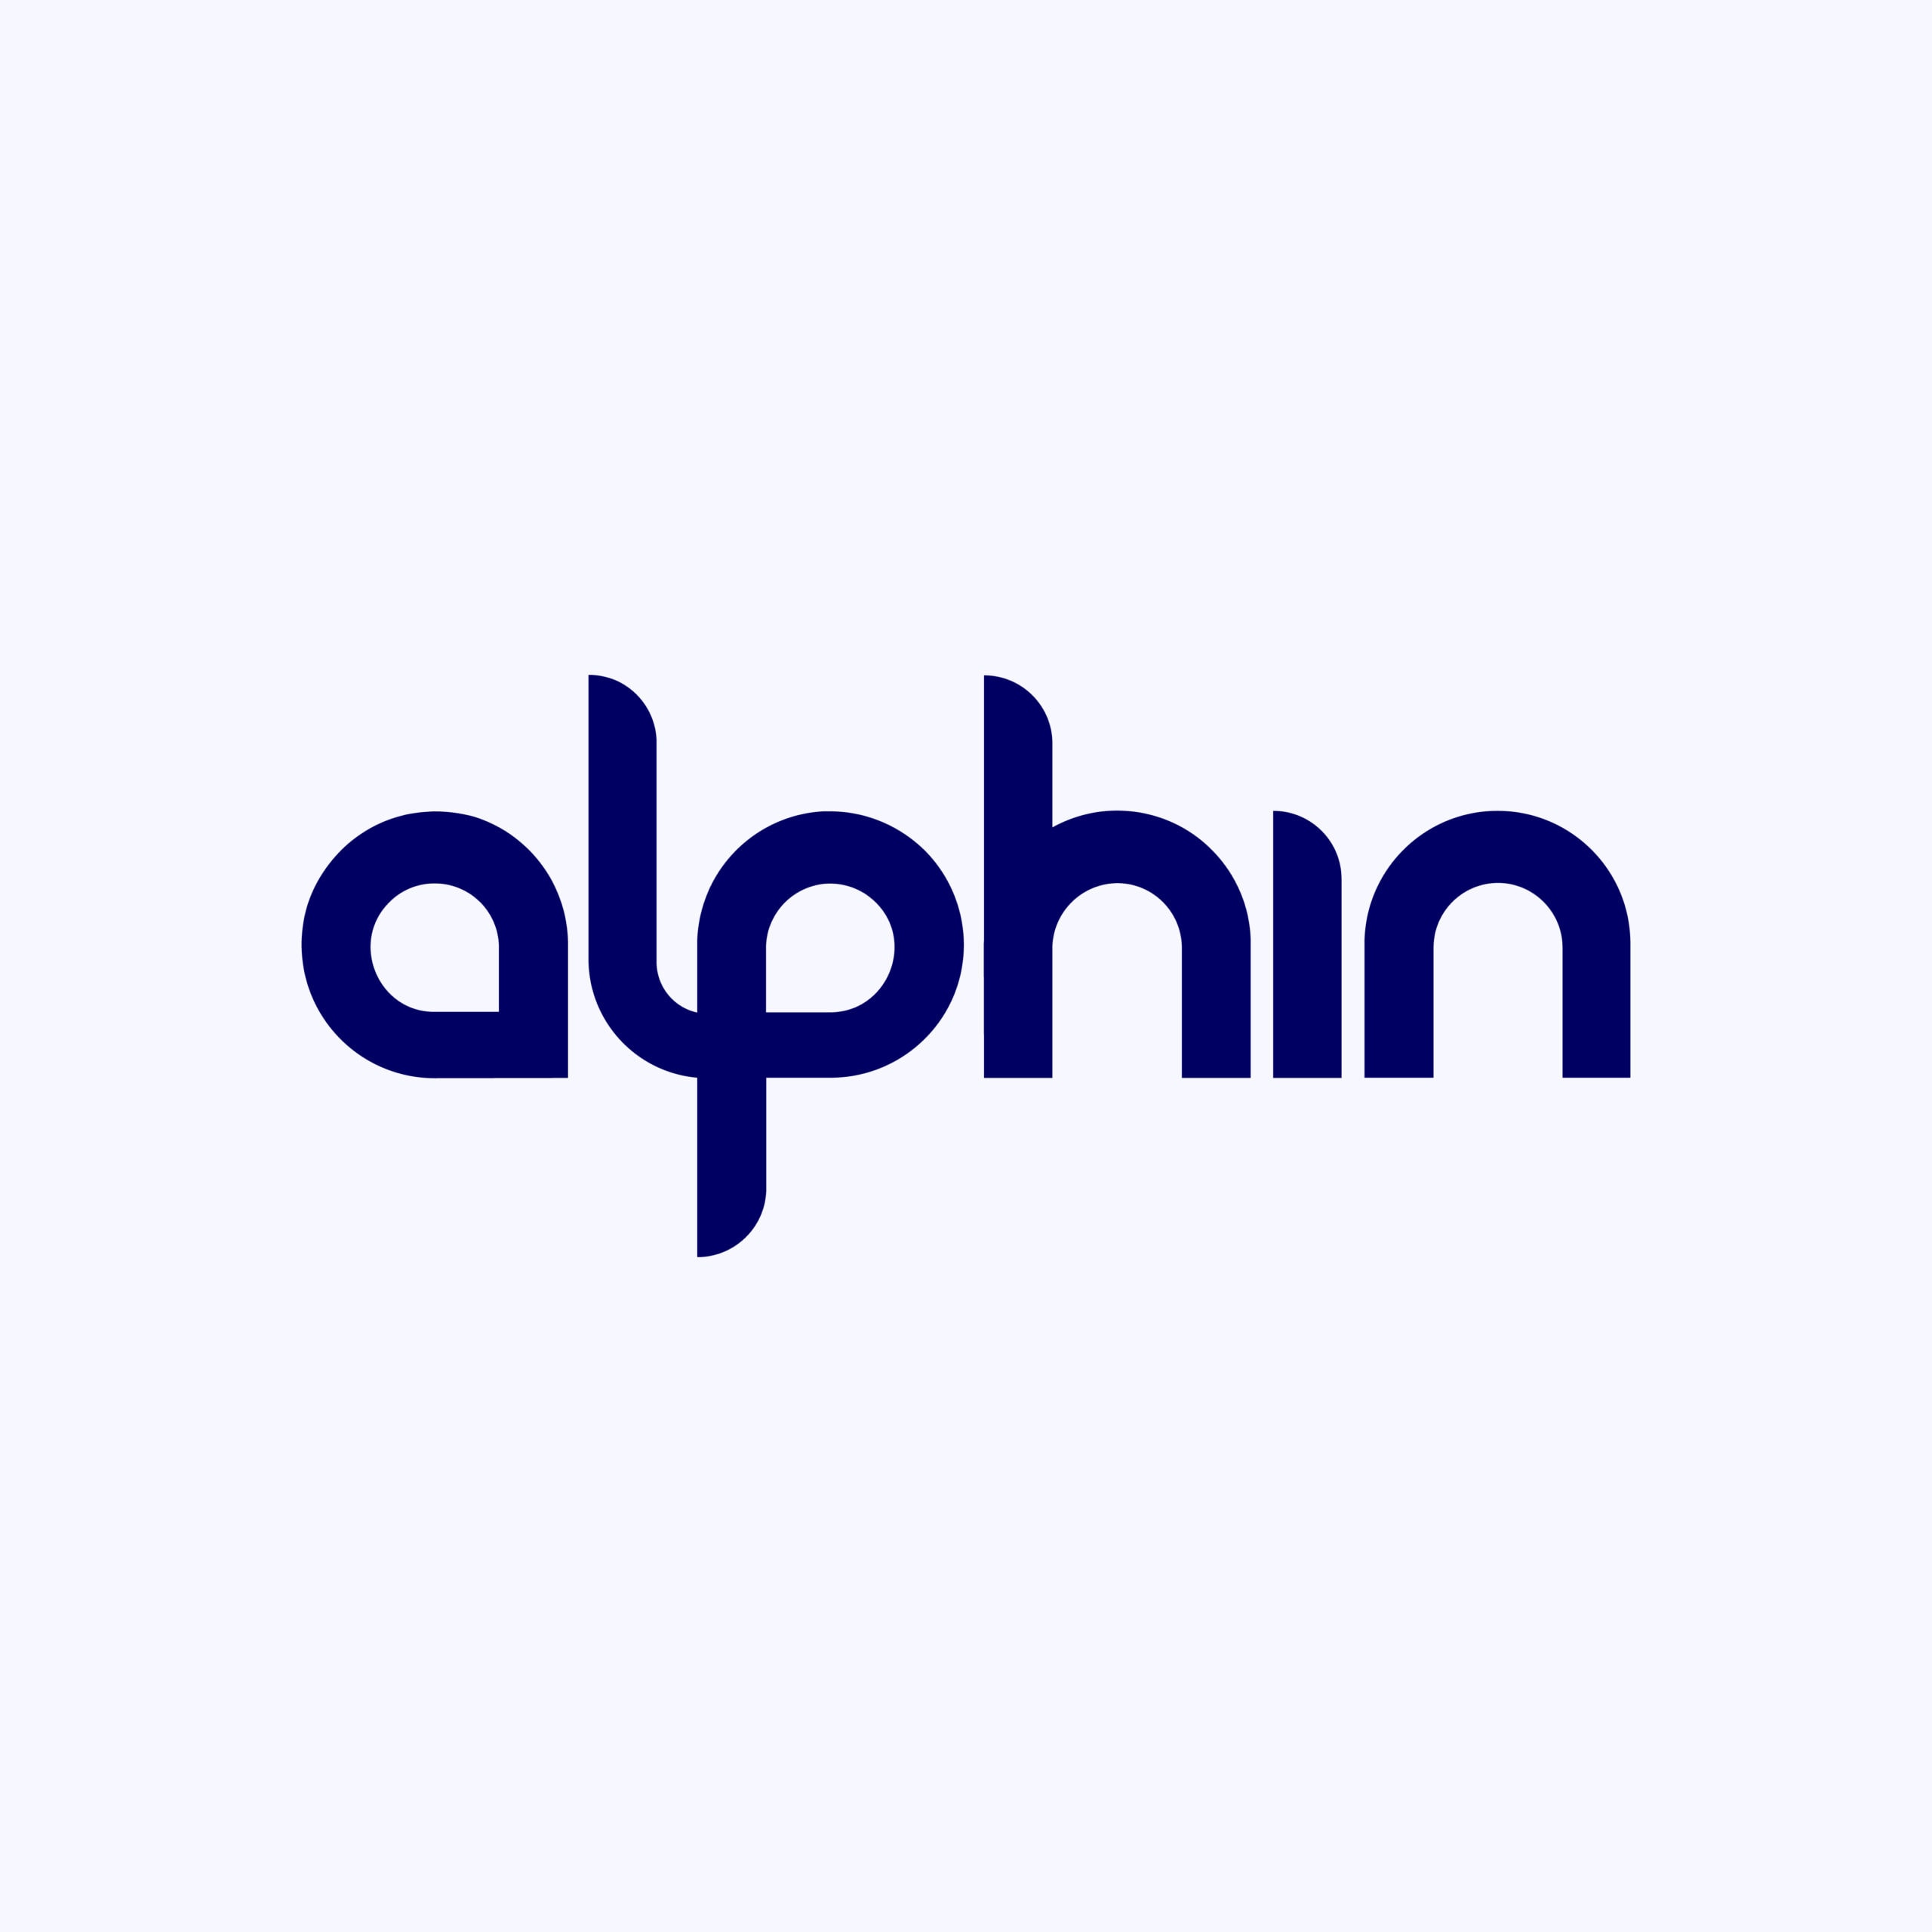 Alphin Logo BlueWhite BG 5c6d69c36f1e11d6092cd318fdd54129